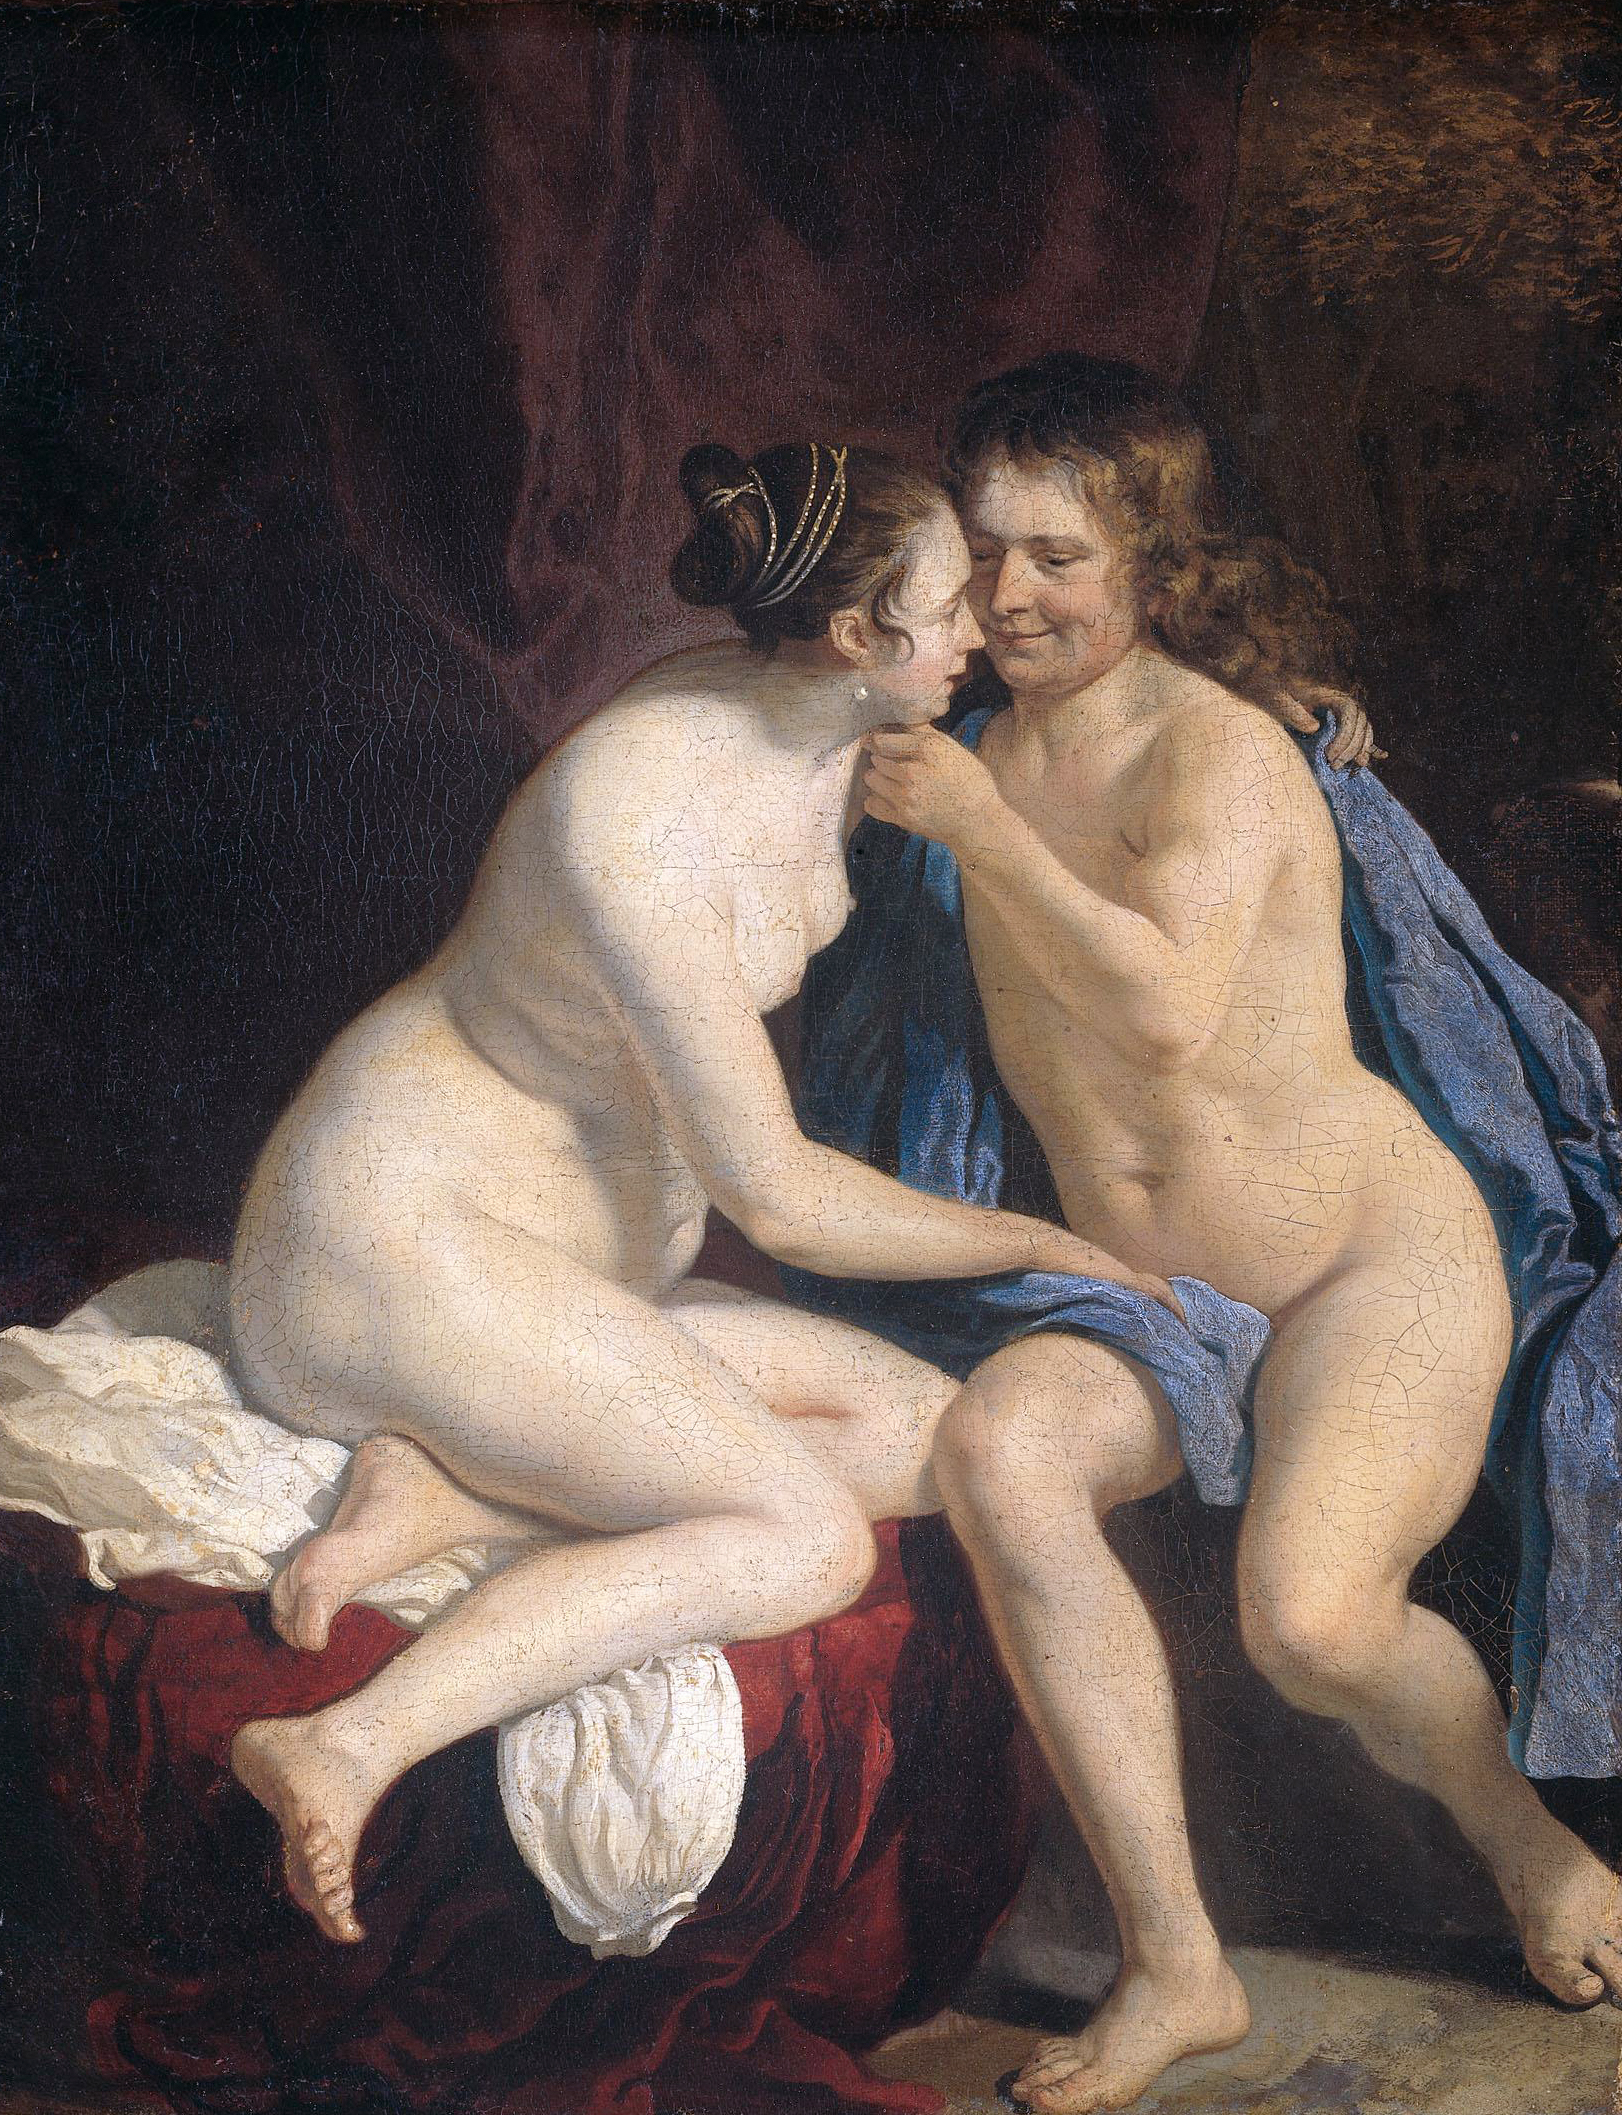 Nude Women And Men Sex 11